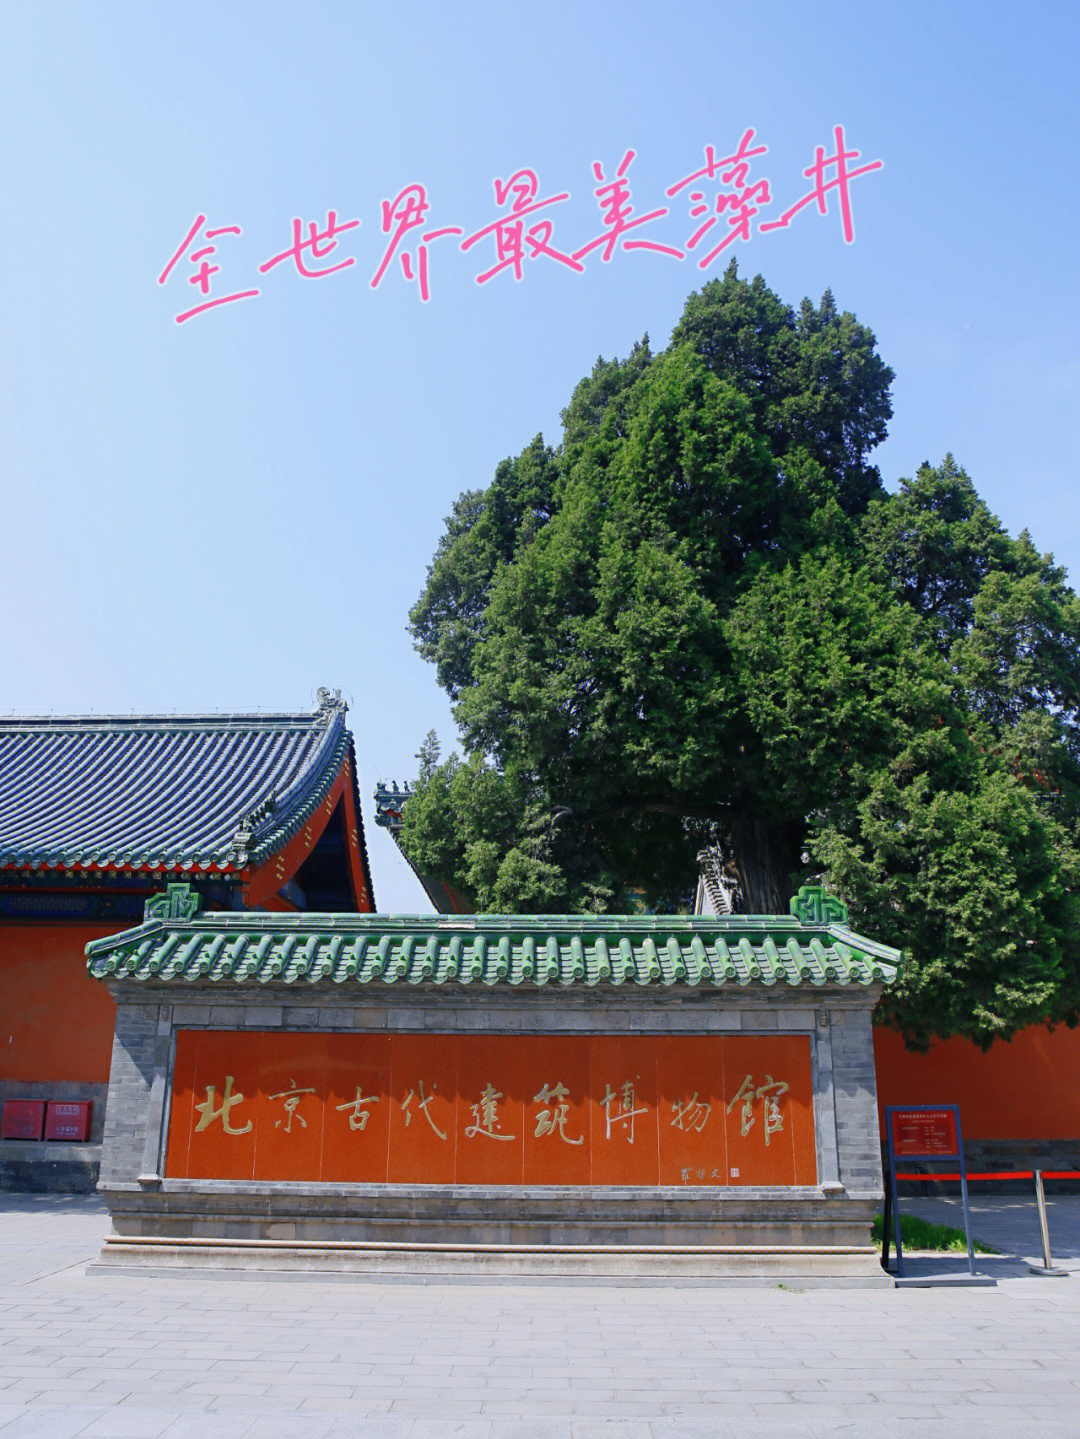 北京古代建筑博物馆位于北京先农坛内,是我国第一座收藏,研究和展示